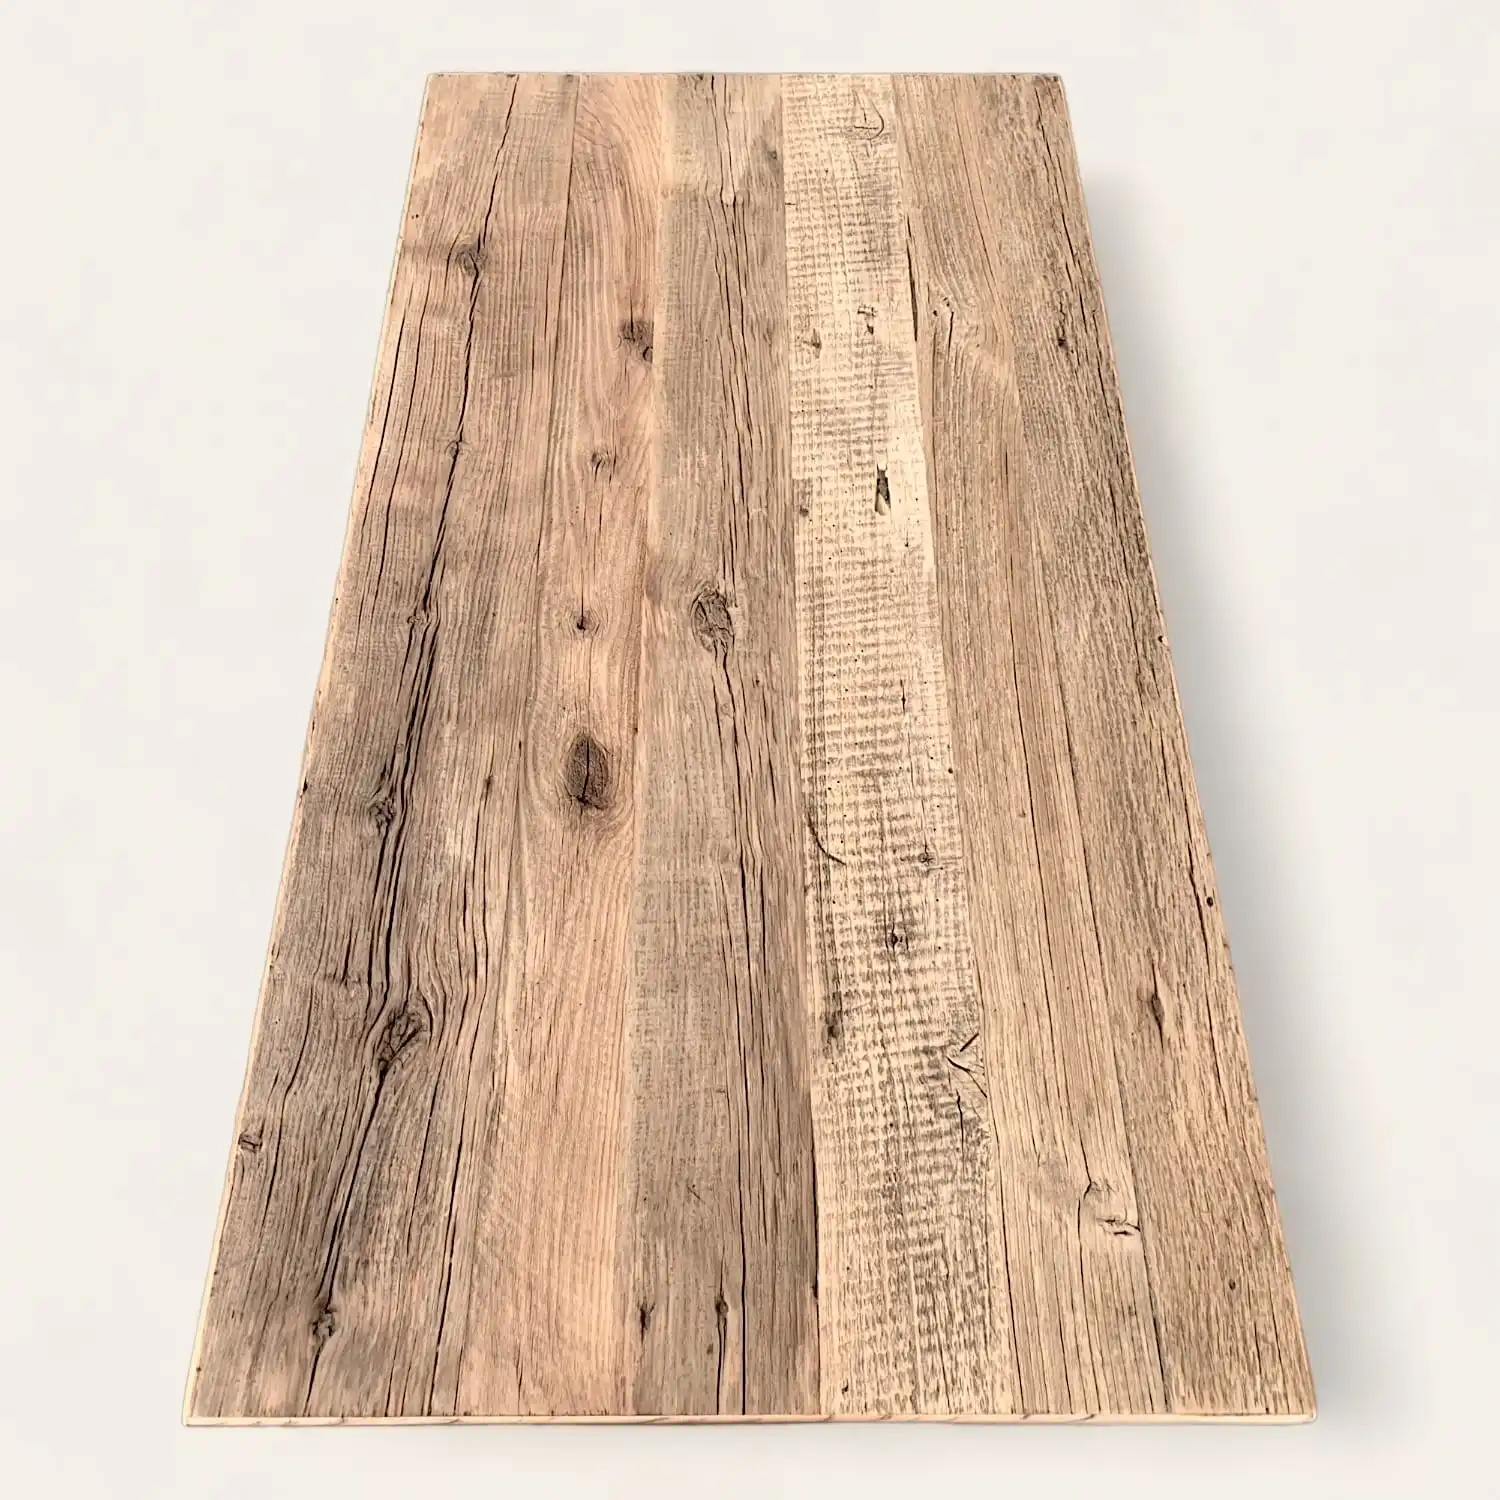  Une image d'un plateau de table campagnarde en bois sur un fond blanc. 